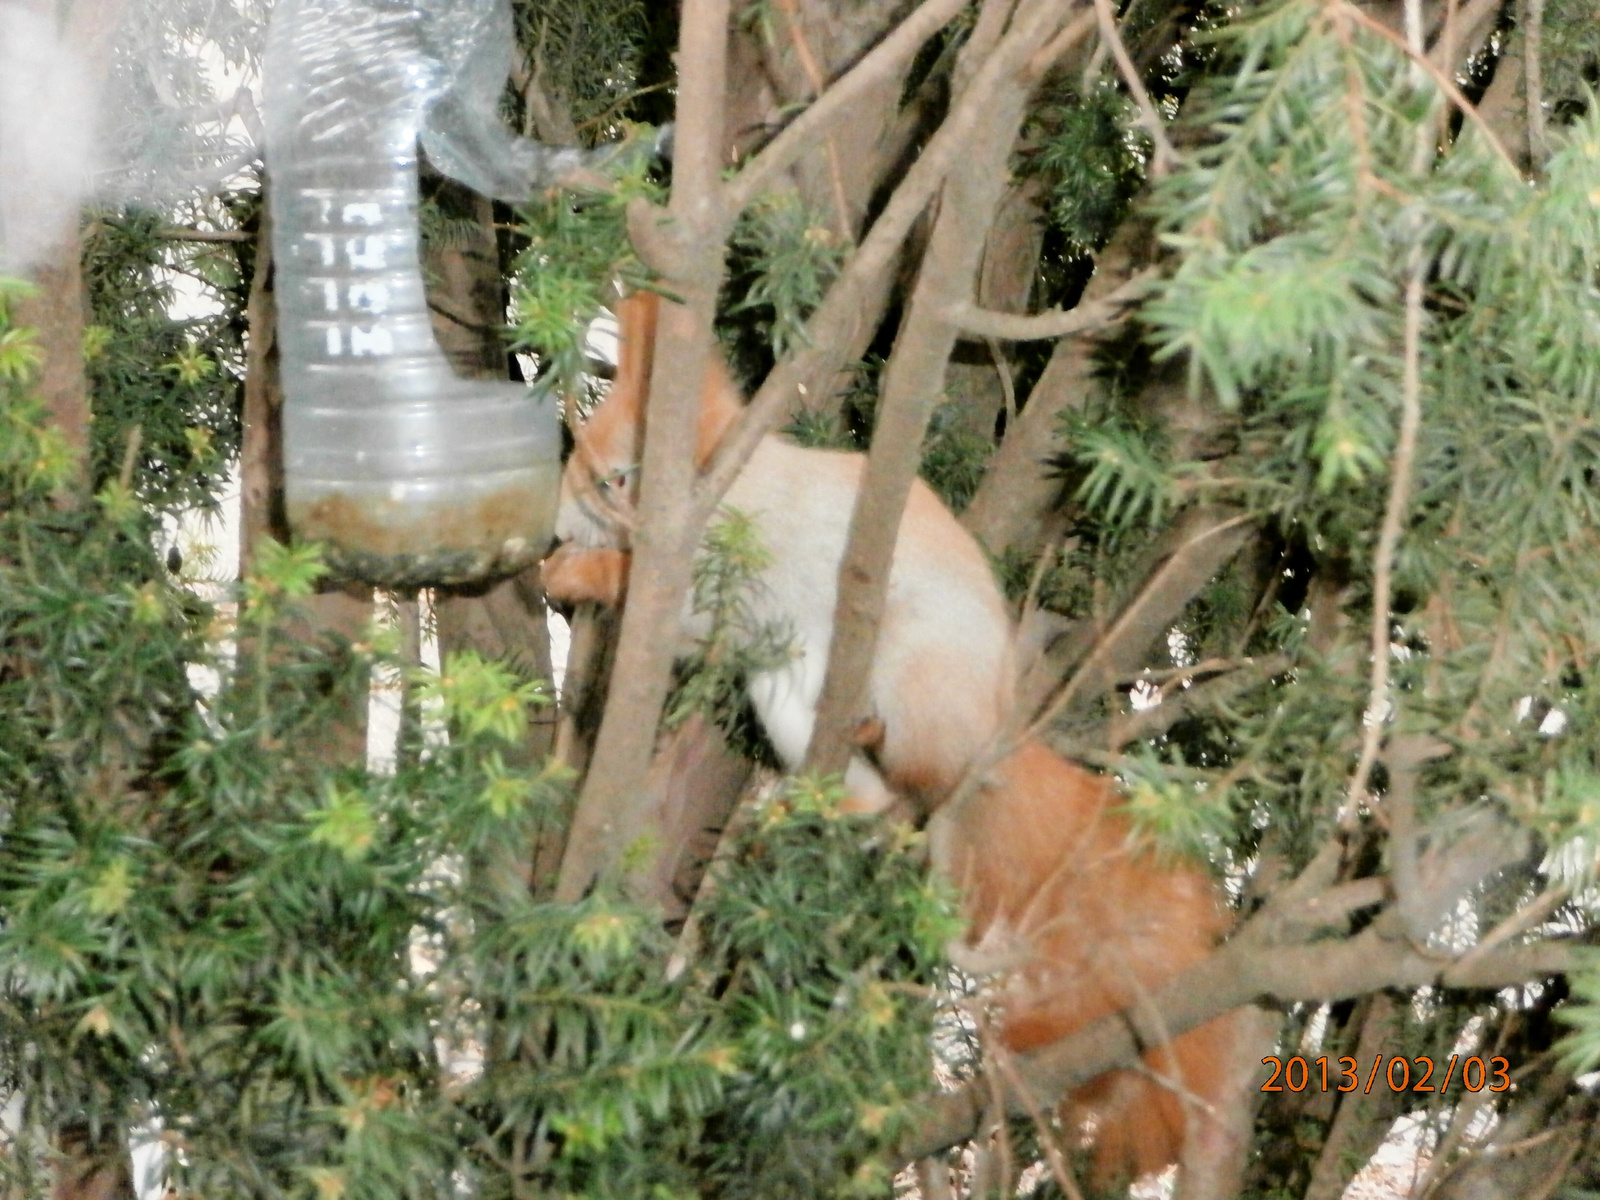 mókus és a szotyola